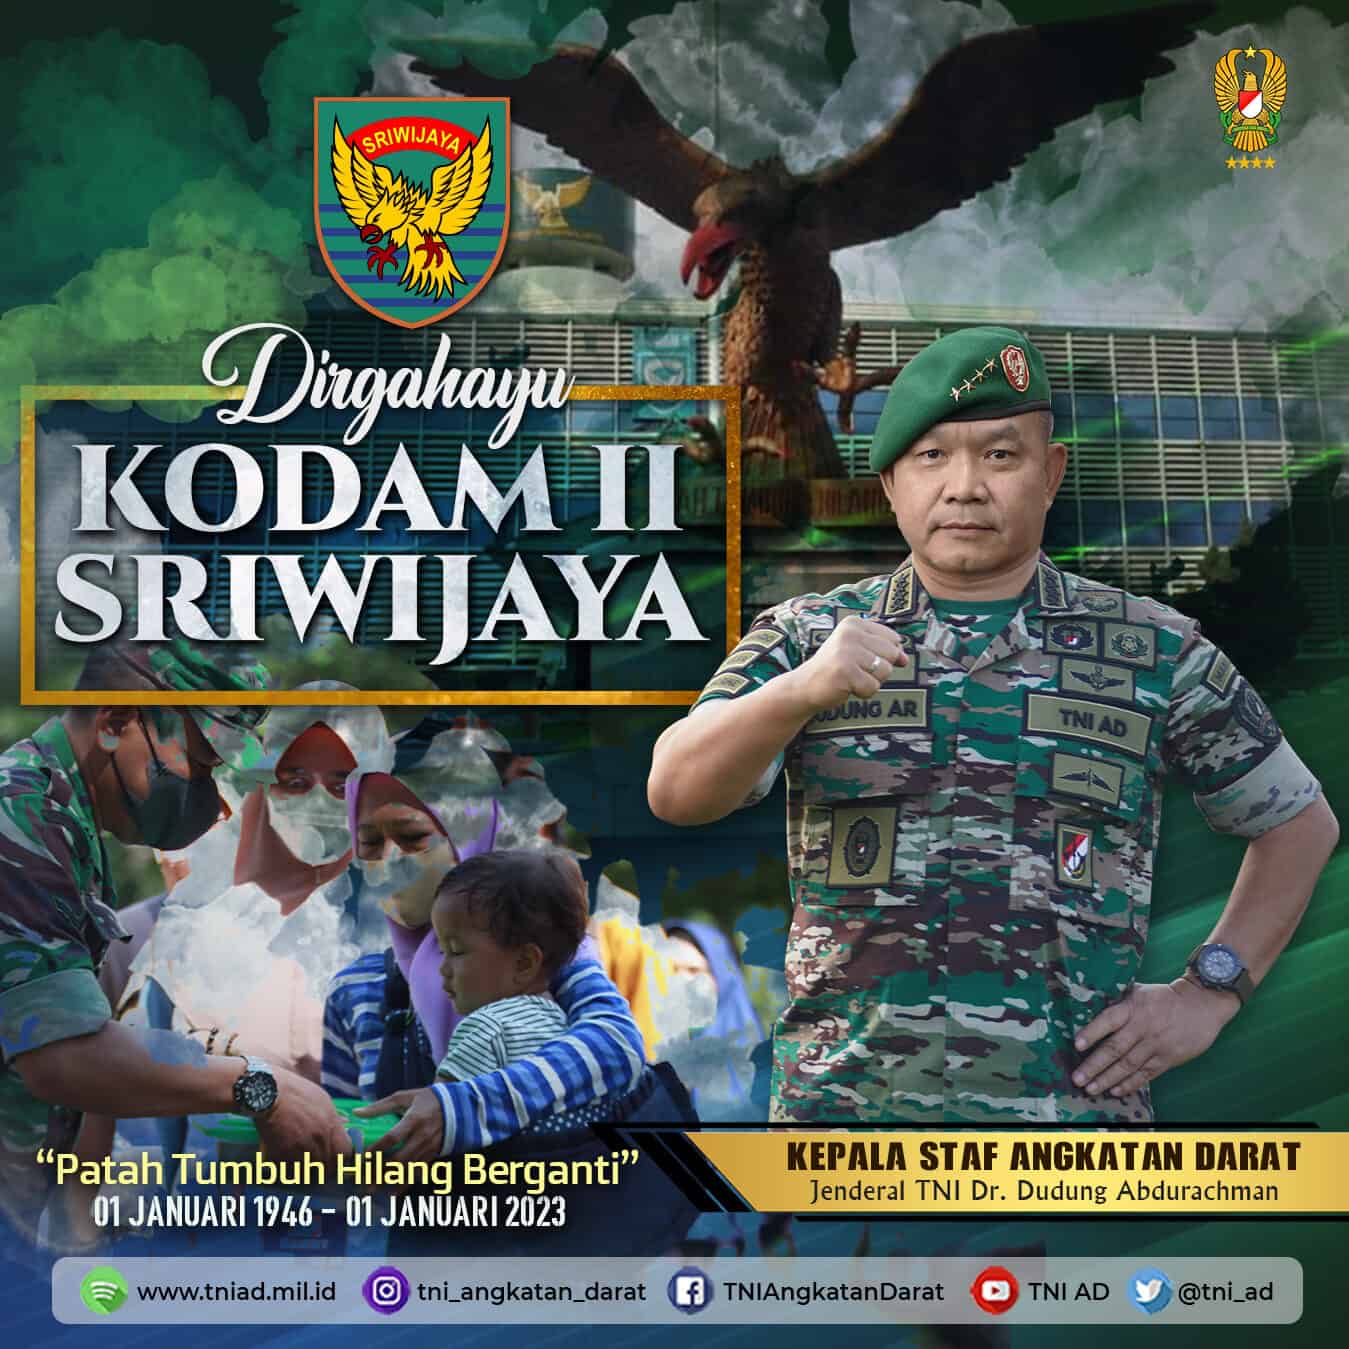 Dirgahayu Kodam II/Sriwijaya “Patah Tumbuh Hilang Berganti” 01 Januari 1946 – 01 Januari 2023